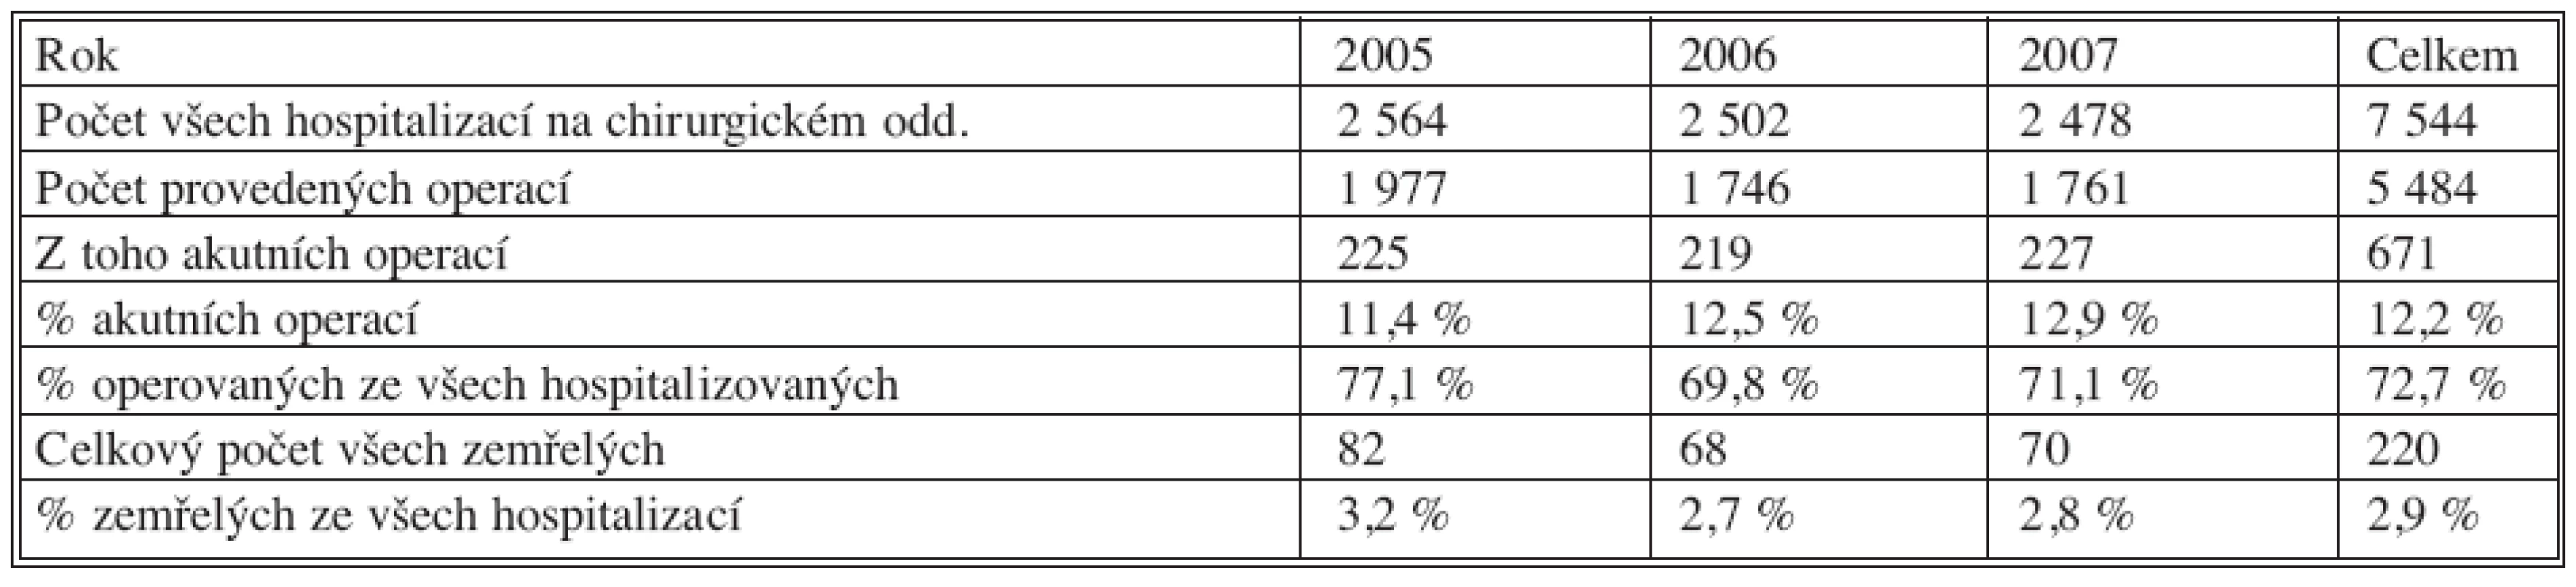 Kvantitativní údaje o činnosti chirurgického oddělení v létech 2005–2007
Tab. 1. Quantitative data on the surgical department’s activities in 2005–2007